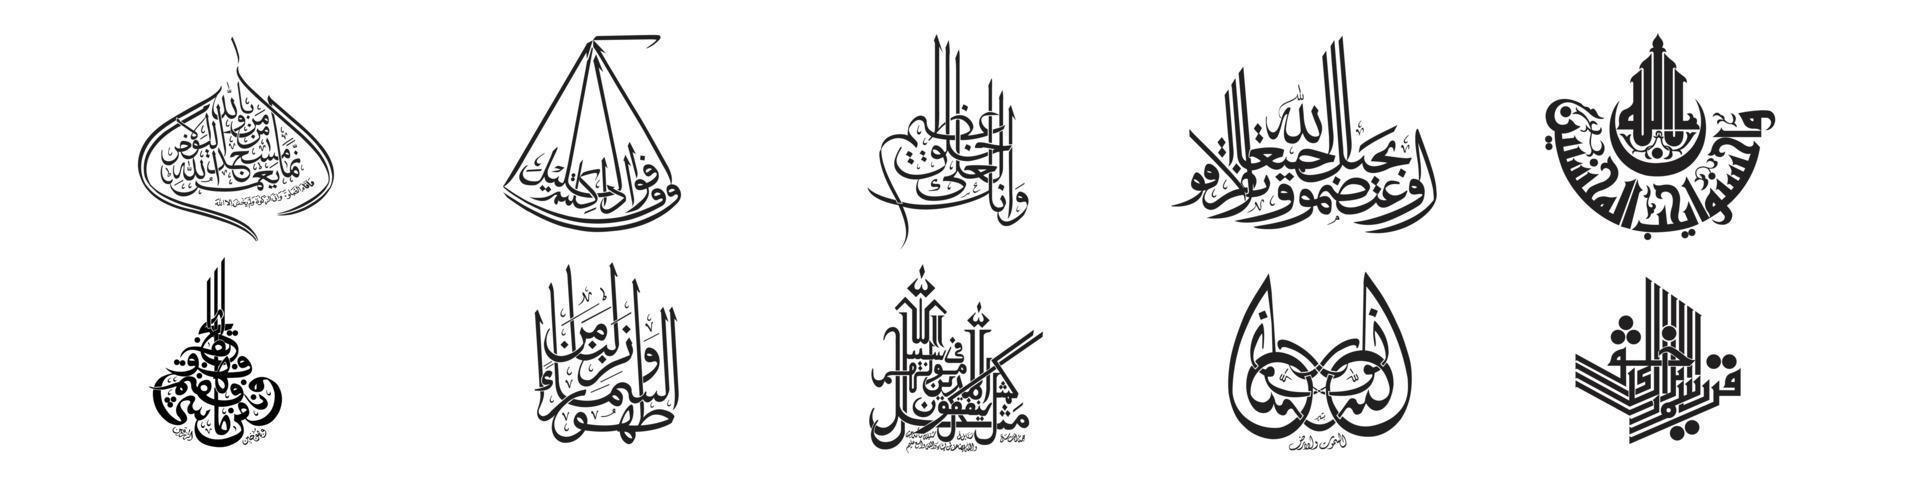 conjunto de caligrafia árabe, ilustração vetorial, tipografia árabe, conjunto de elementos de design de caligrafia, palavra de boas-vindas no tipo de caligrafia árabe criativa, composição vertical, texto de caligrafia árabe. vetor